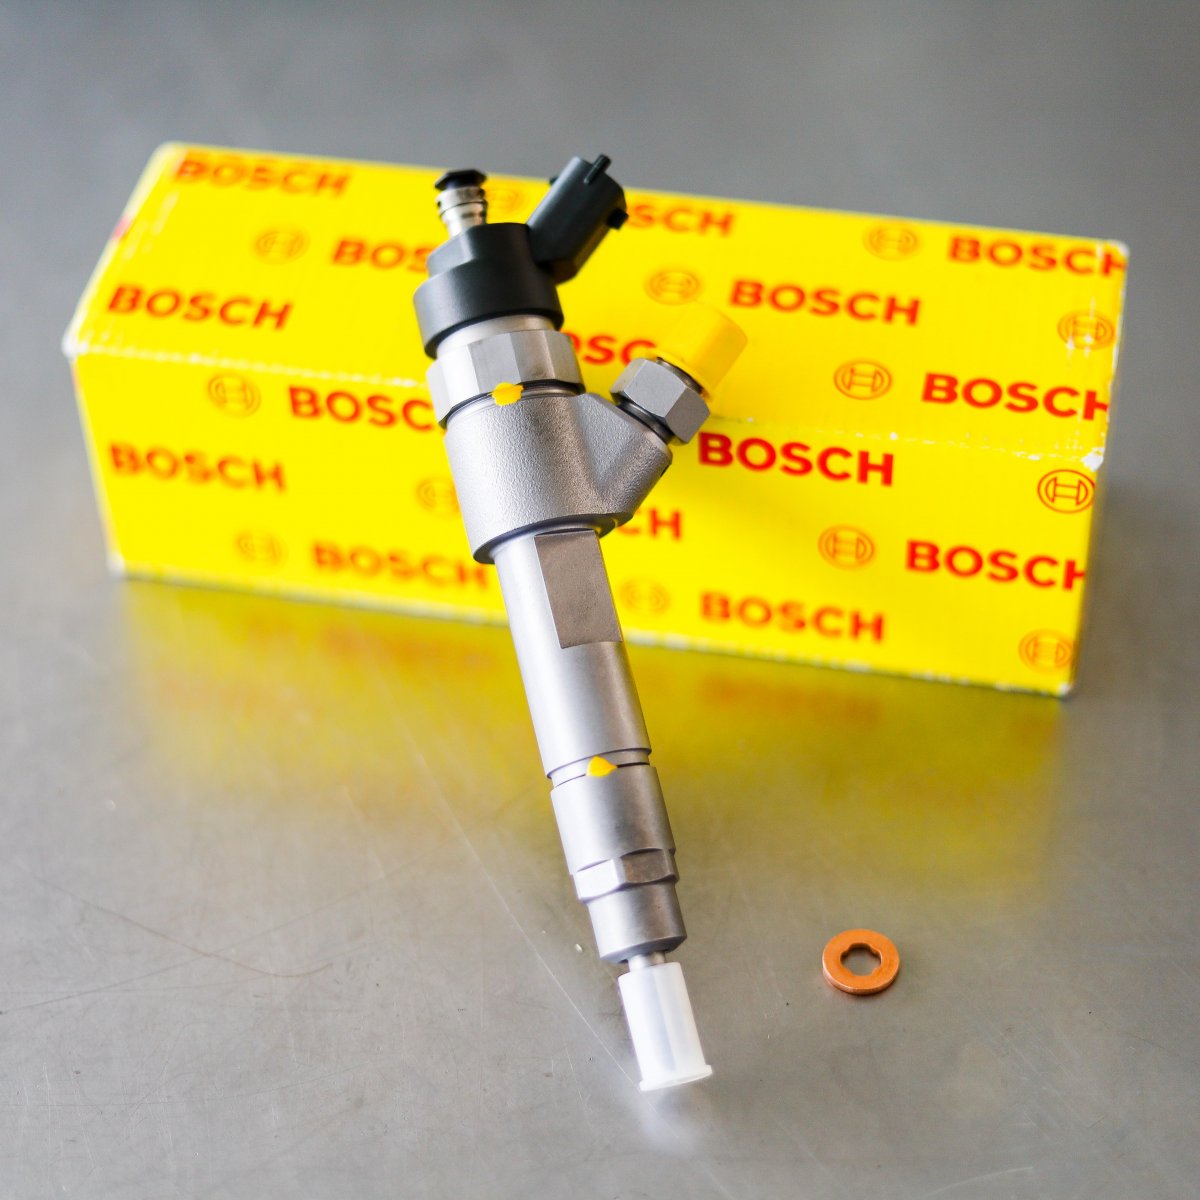 Wtryskiwacz Bosch po regeneracji gotowy do wysyłki do zamawiającego na gwarancji na okres 24 miesięcy w dobrej cenie